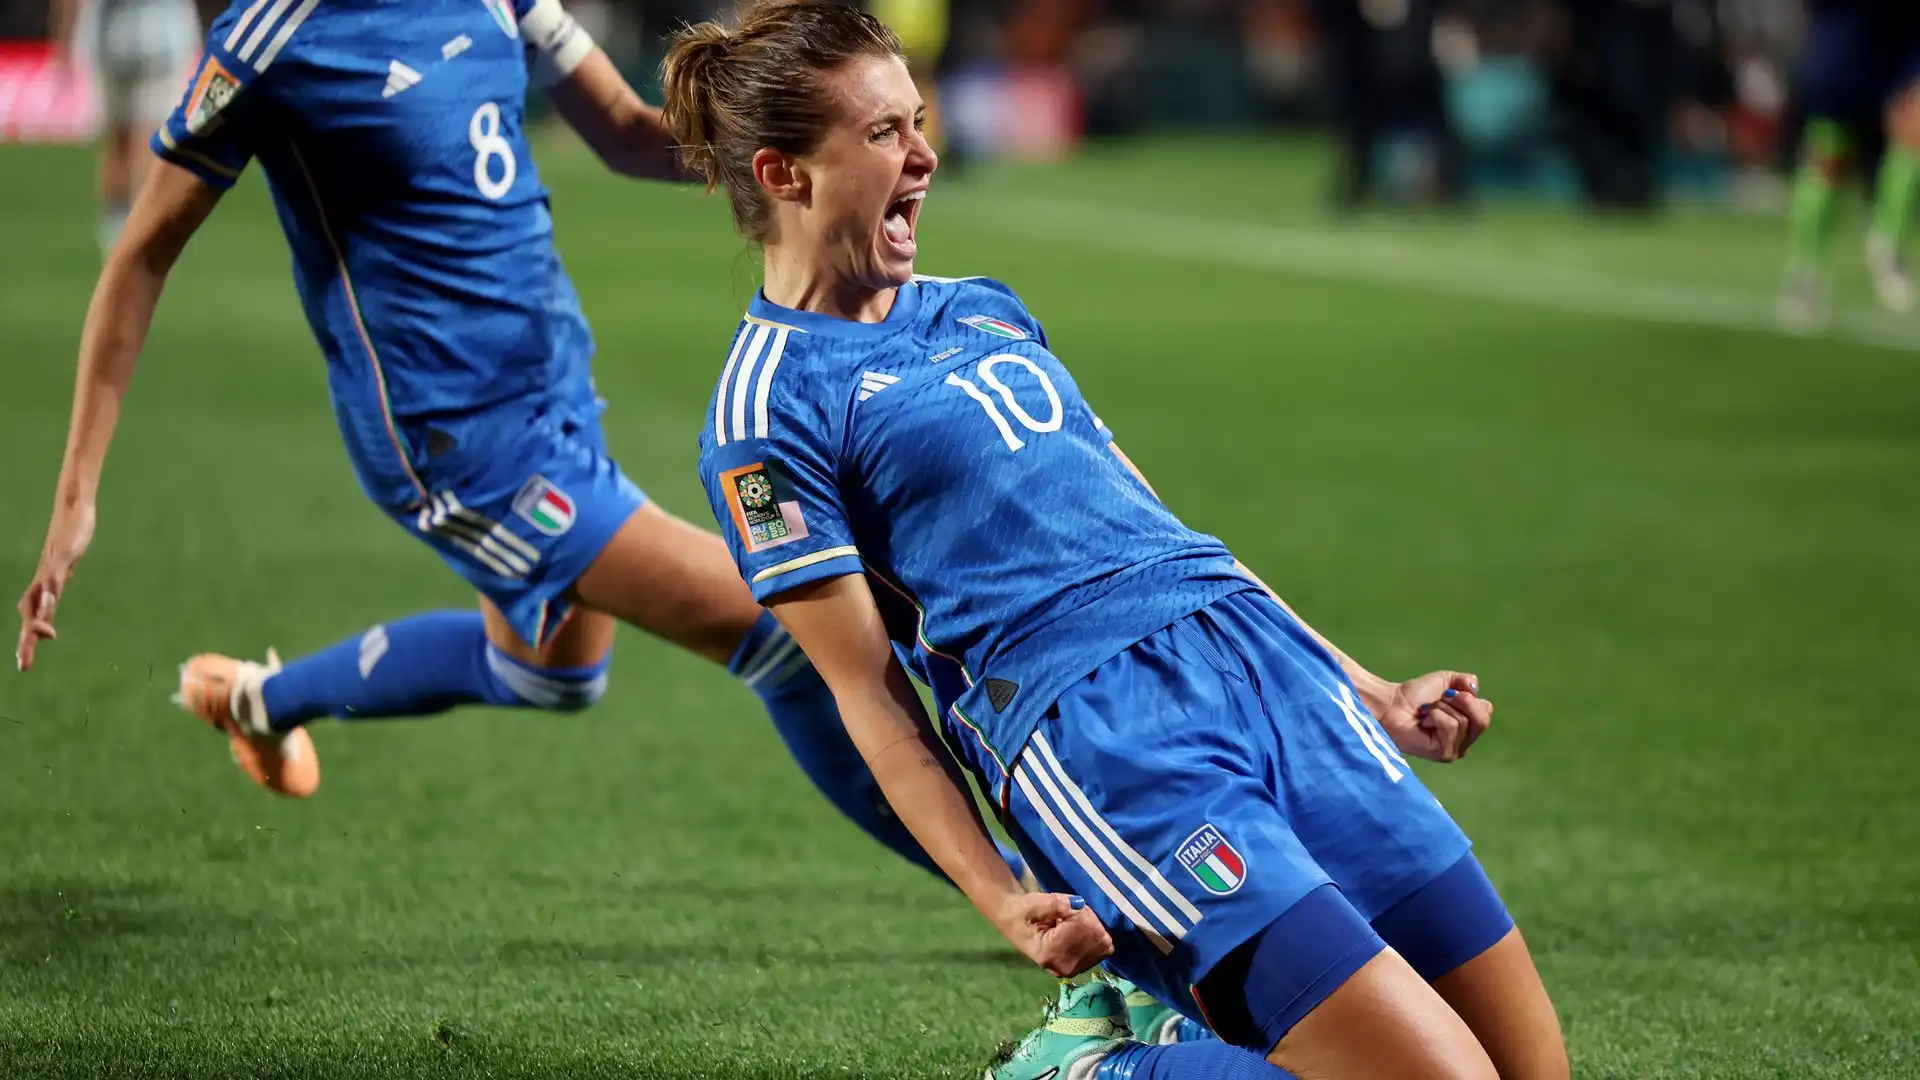 L'Italia di calcio femminile ha iniziato bene il suo Mondiale